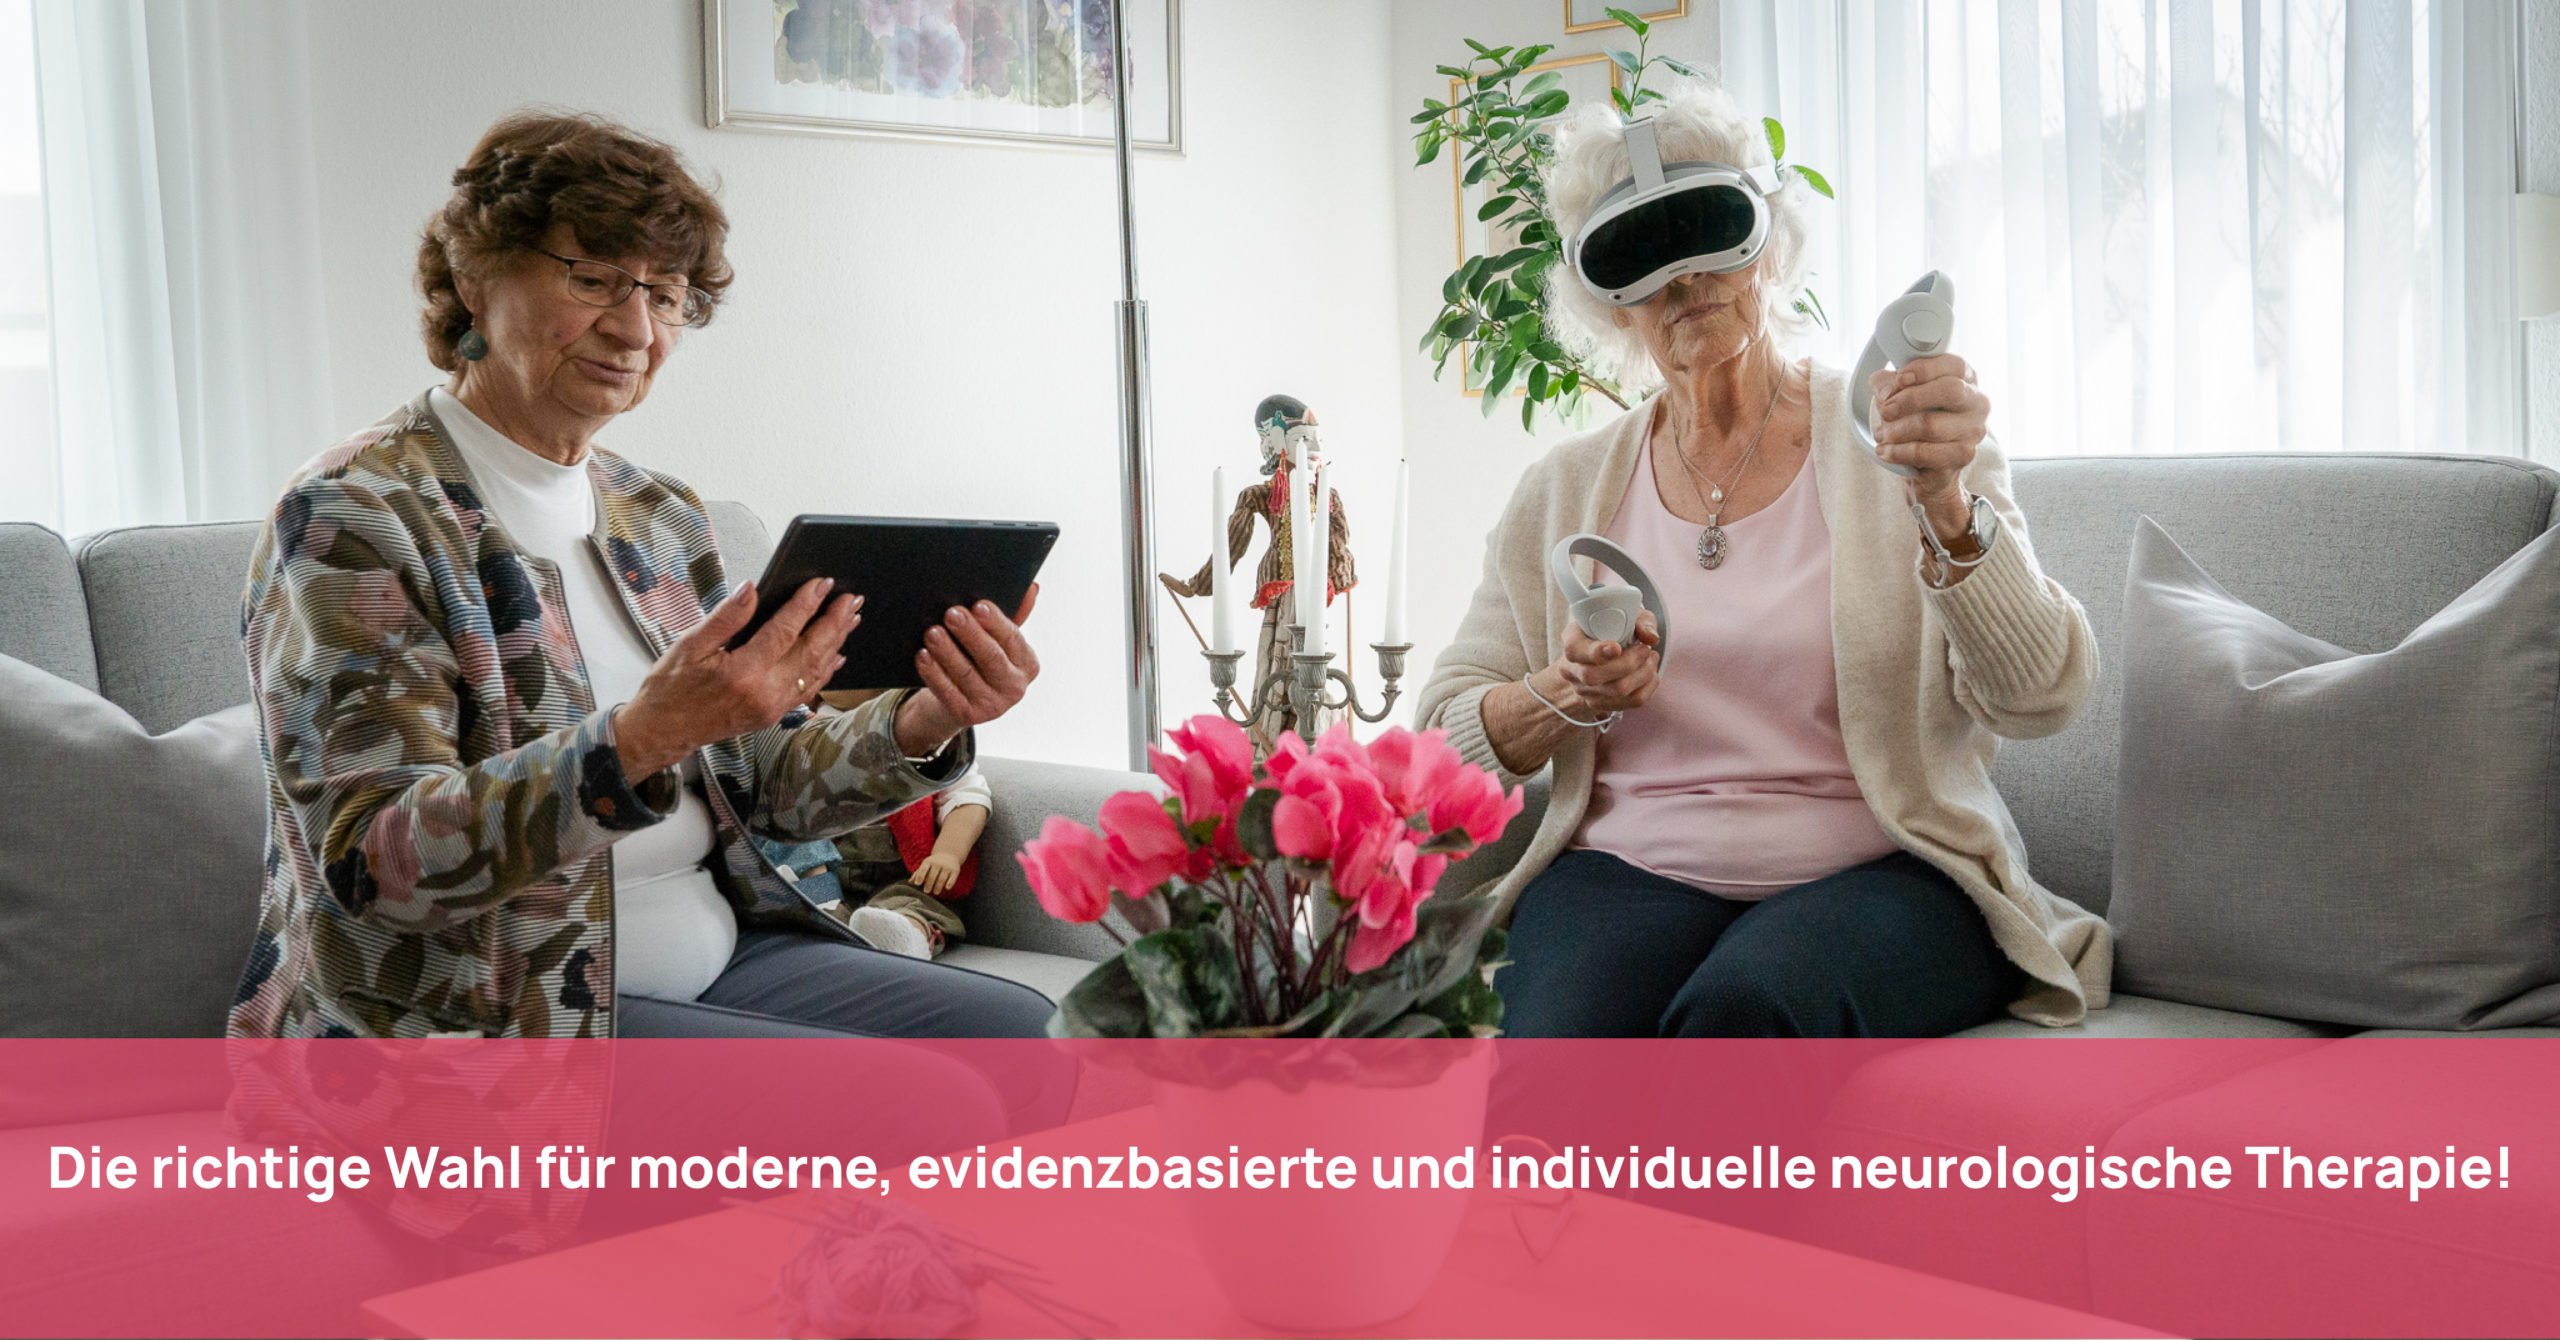 Seniorinnen trainieren gemeinsam mit VR-Brille